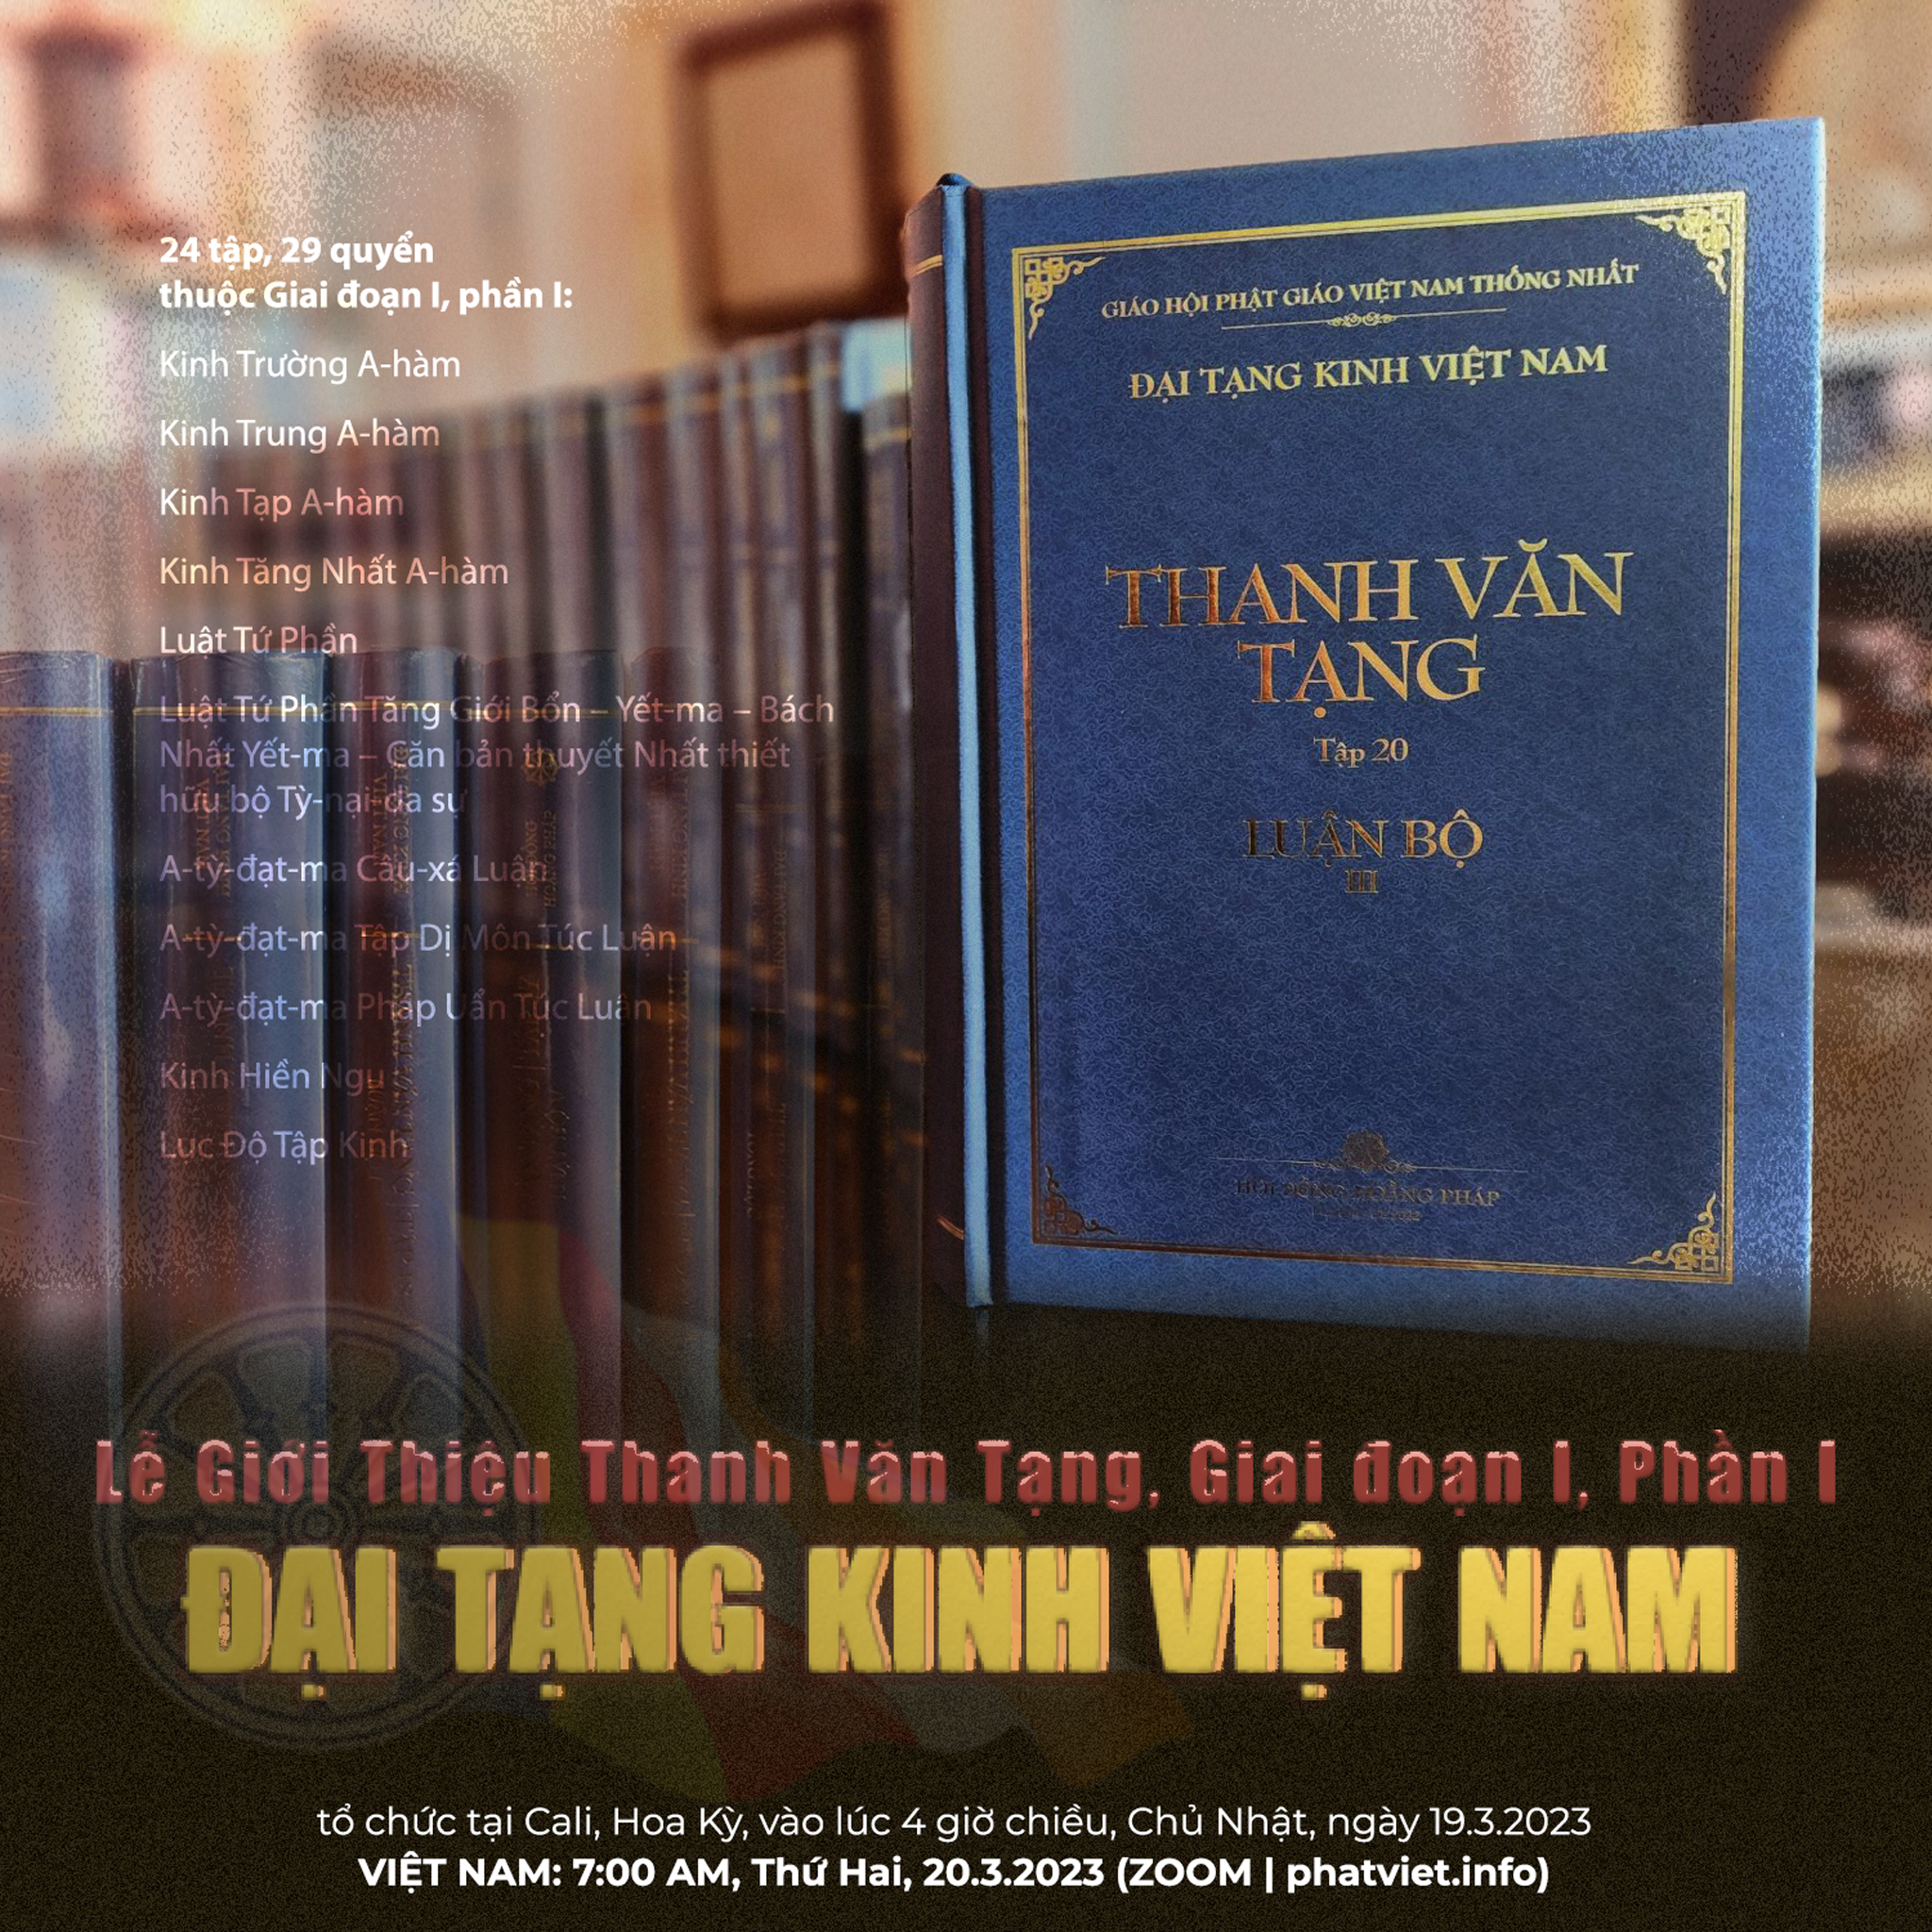 Toàn văn phát biểu của HT. THÍCH TUỆ SỸ tại Lễ Giới thiệu Thanh Văn Tạng trong Đại Tạng Kinh Việt Nam